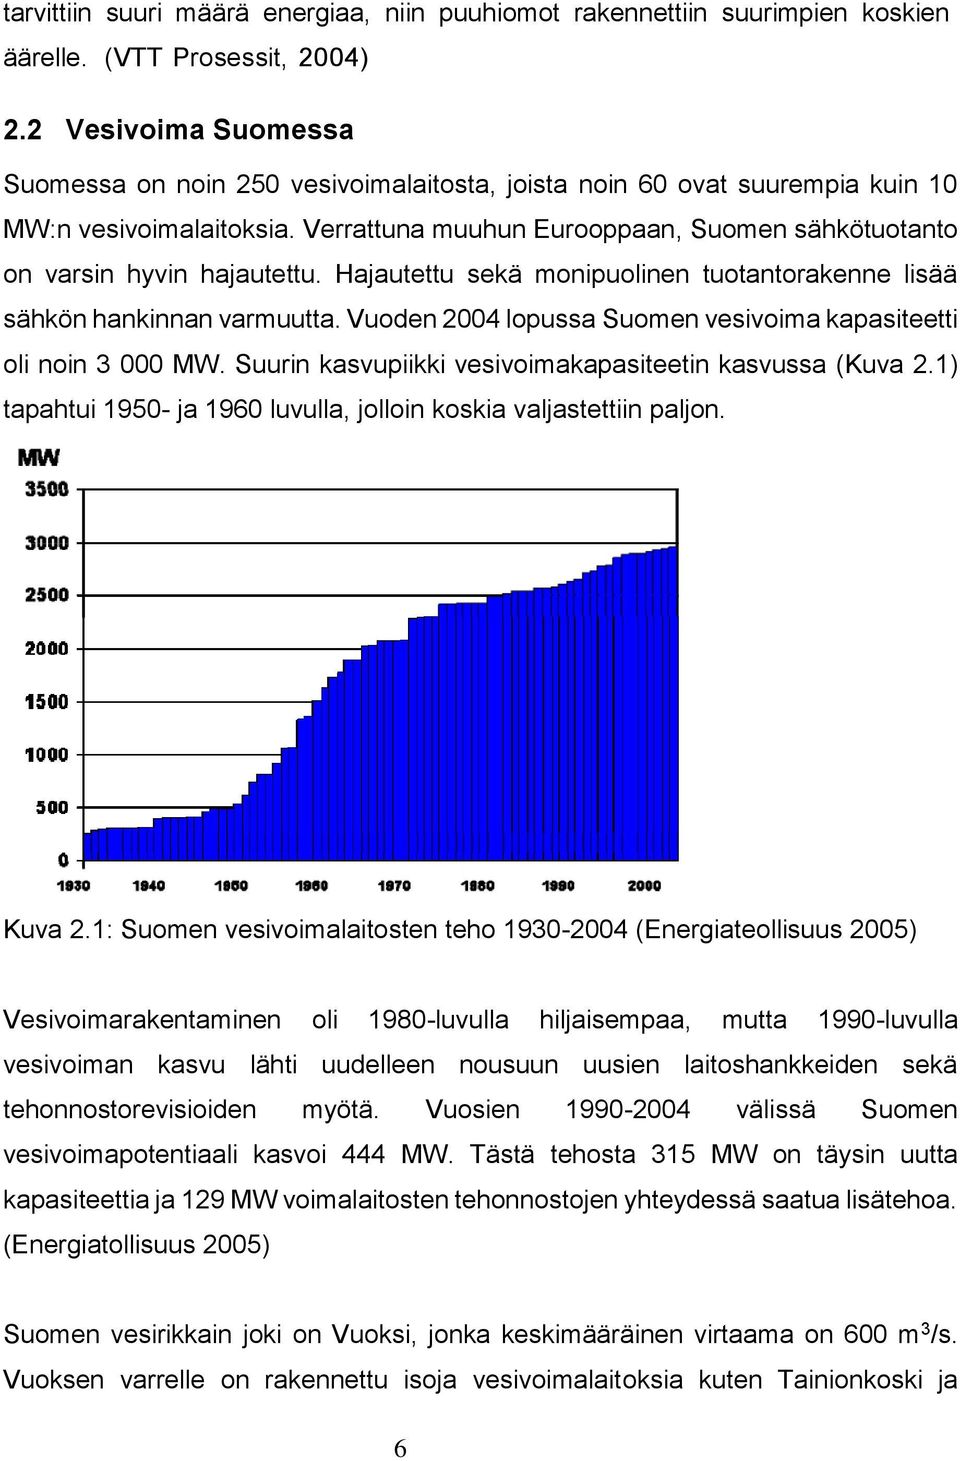 Verrattuna muuhun Eurooppaan, Suomen sähkötuotanto on varsin hyvin hajautettu. Hajautettu sekä monipuolinen tuotantorakenne lisää sähkön hankinnan varmuutta.